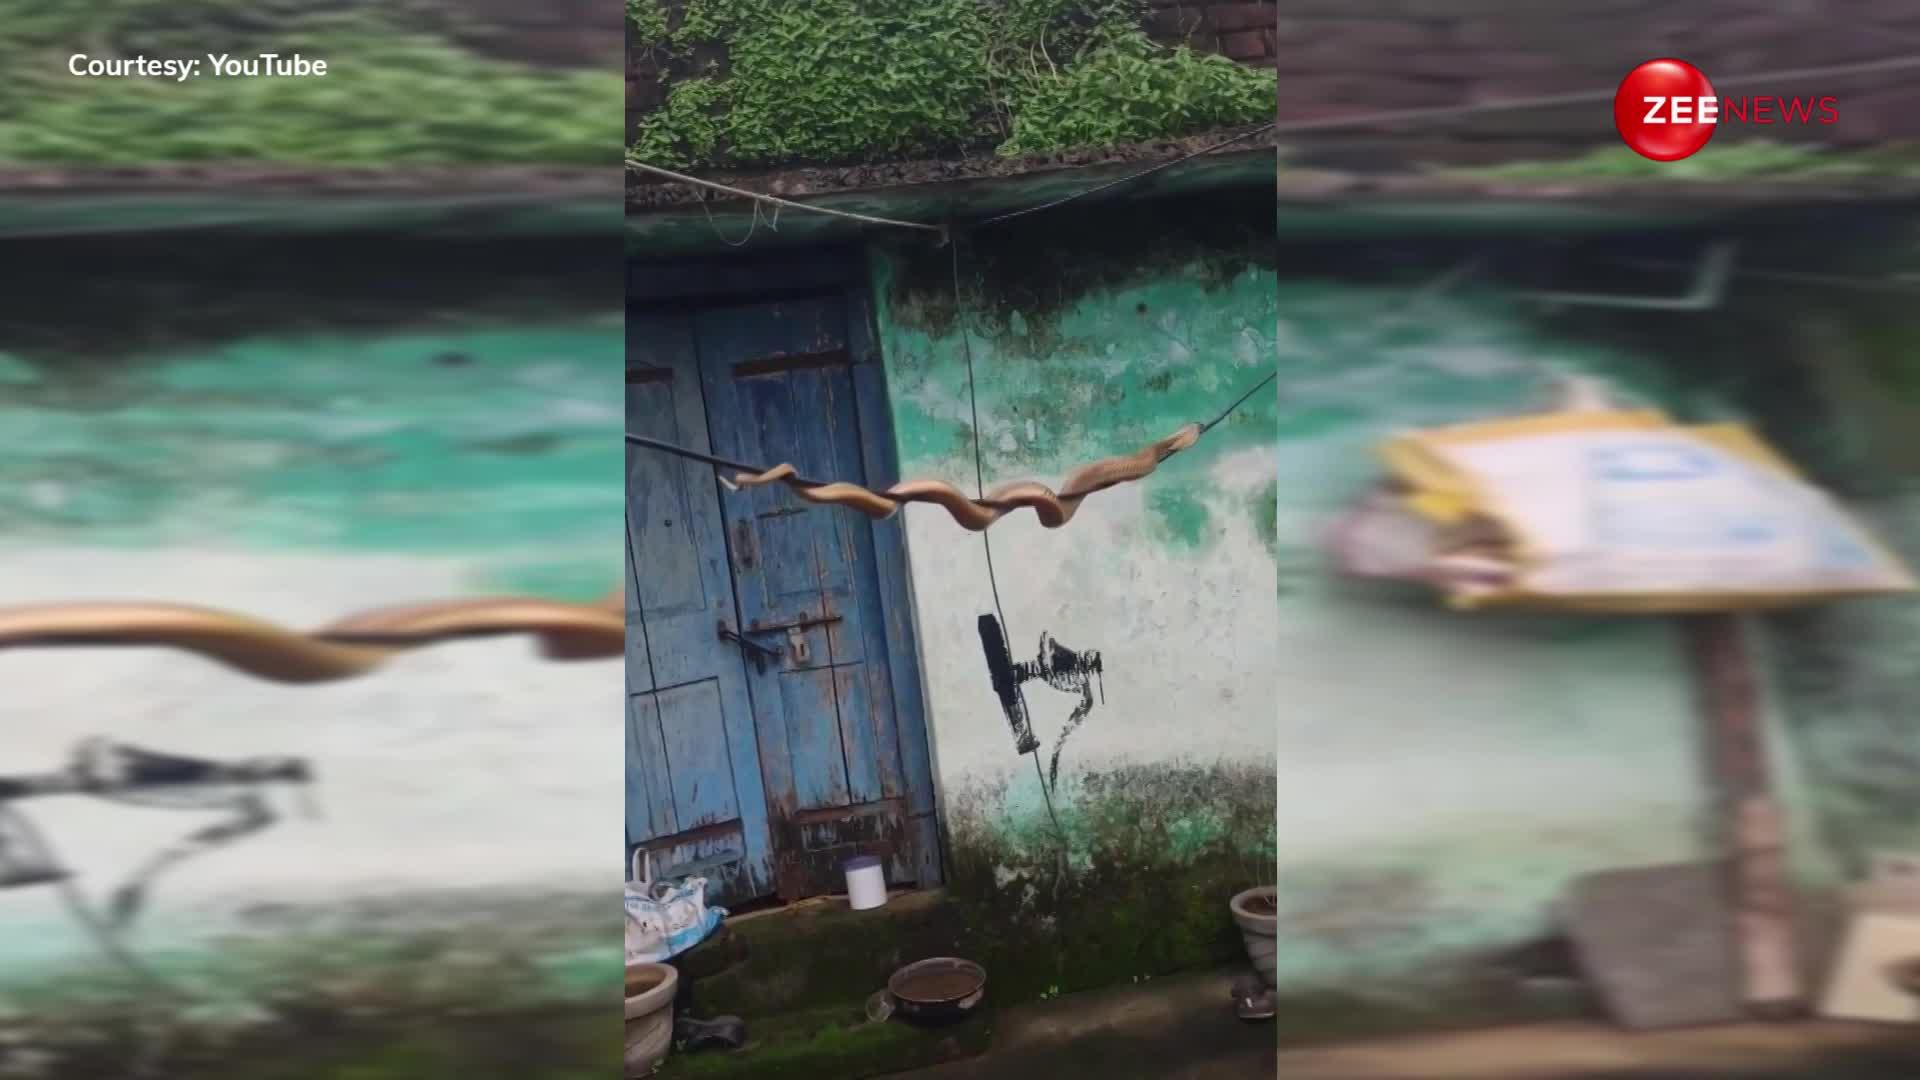 नागिन से मिलने के लिए बिजली की नंगी तार पर चढ़ गया किंग कोबरा, देखने के लिए घरों से निकल पड़े लोग